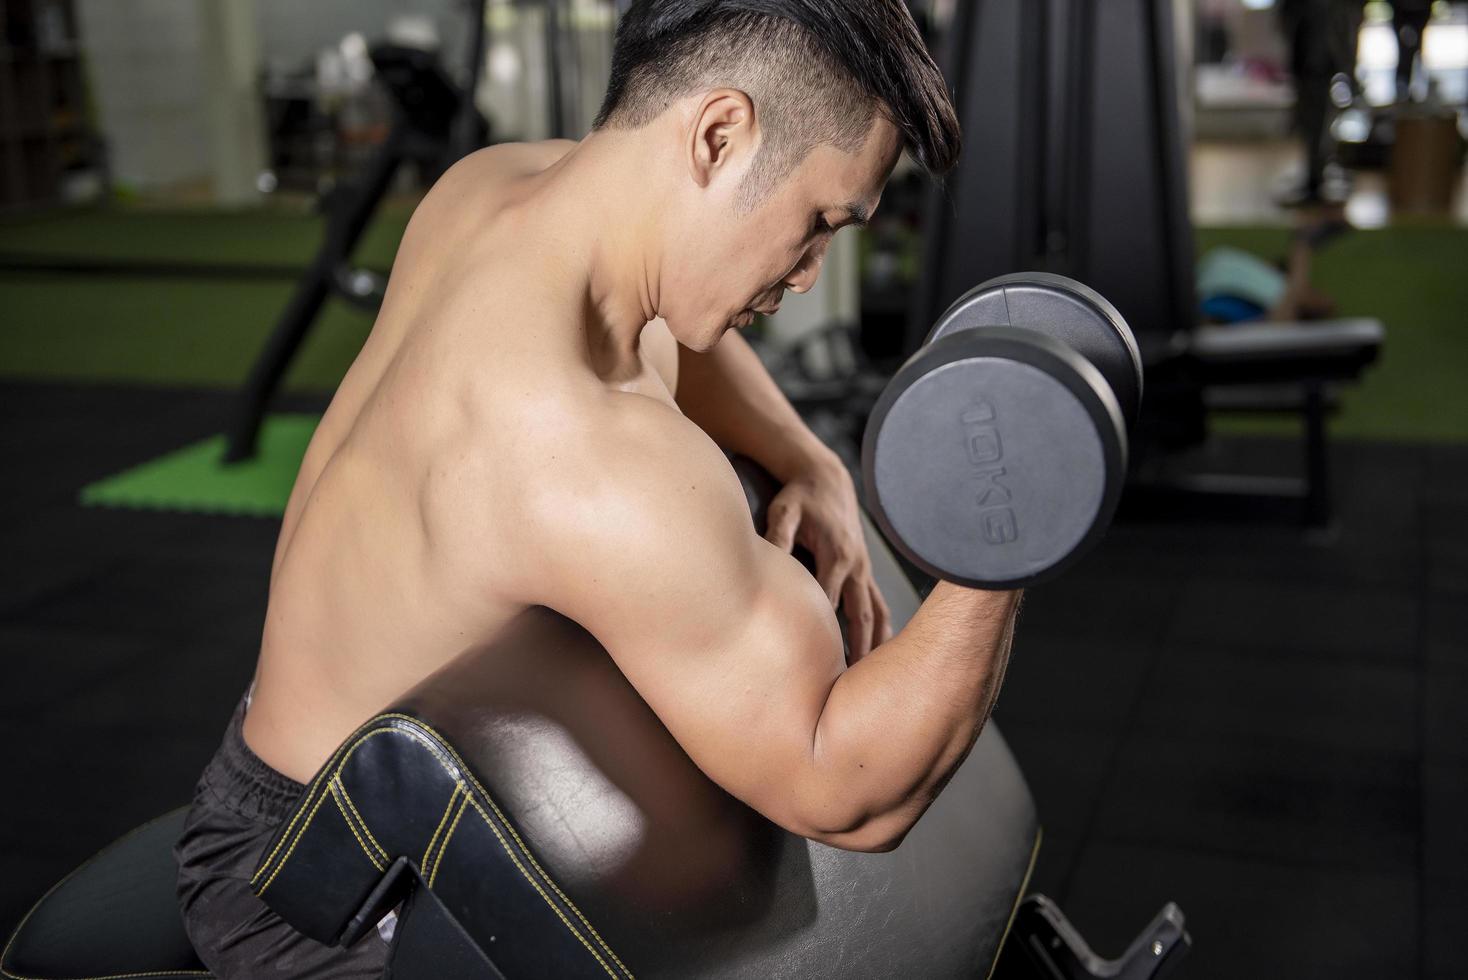 Le bodybuilder de l'homme de remise en forme musculaire est une séance d'entraînement avec des haltères dans une salle de sport photo